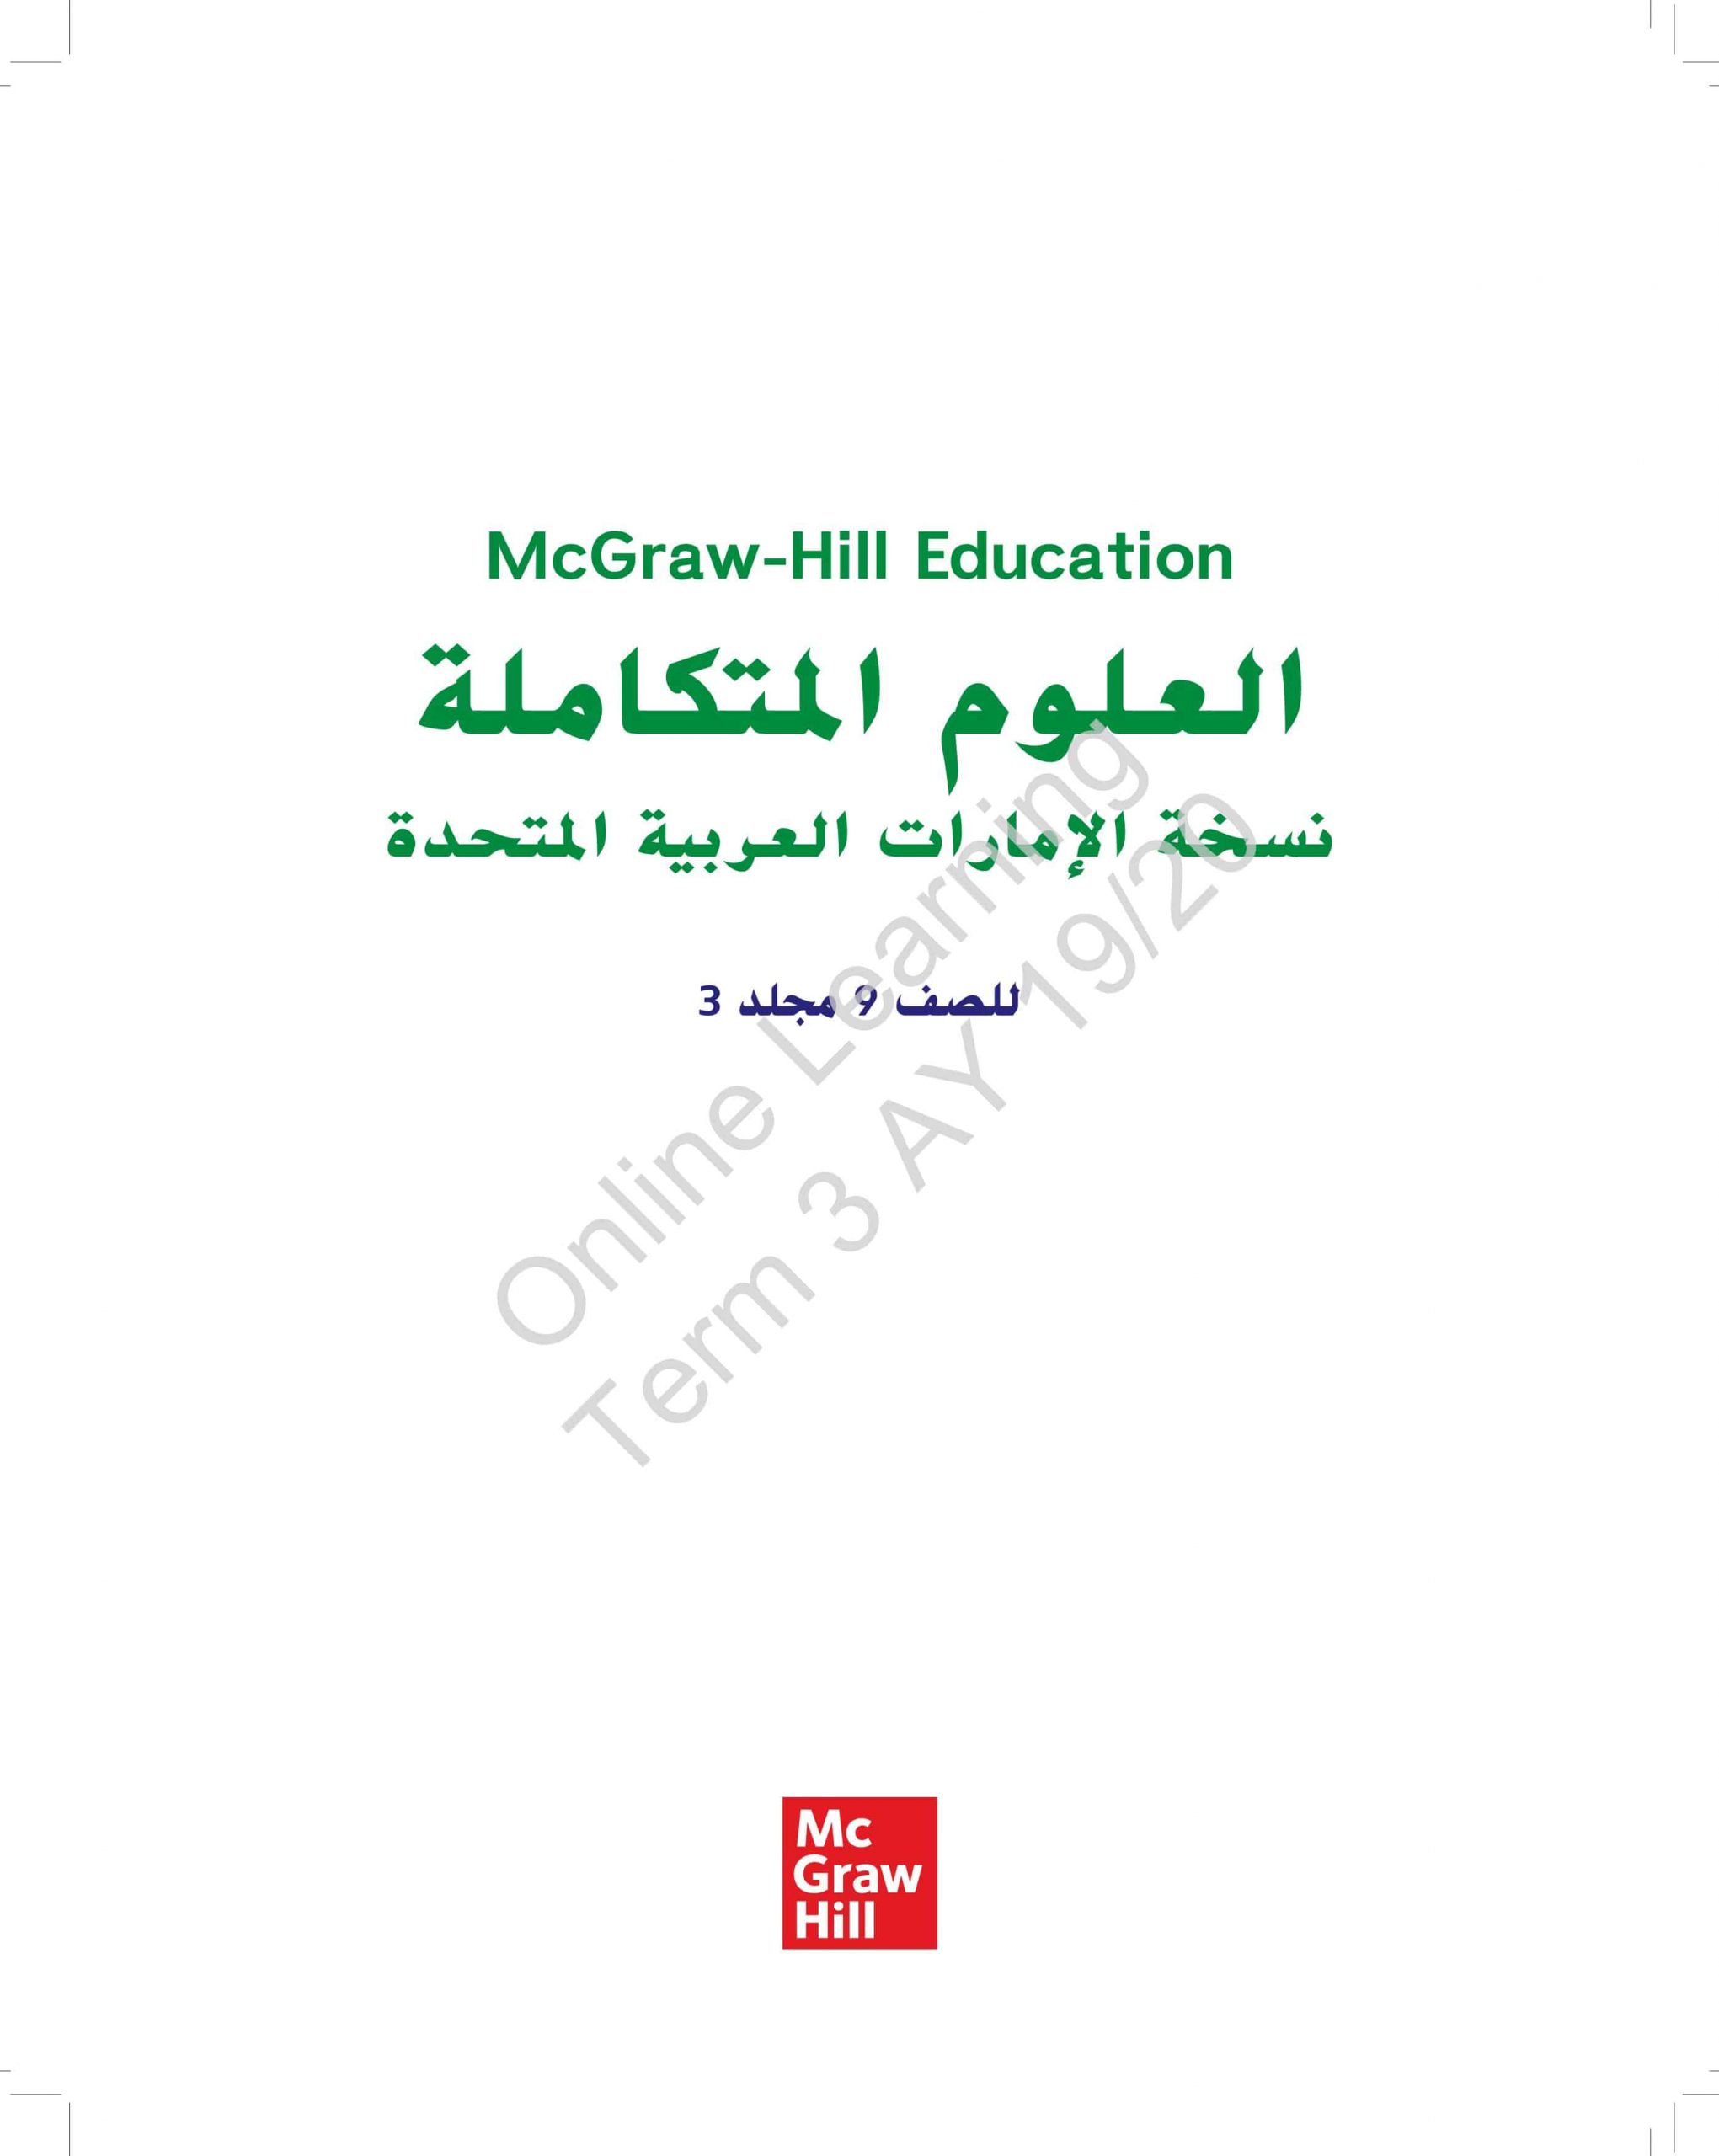 كتاب الطالب الفصل الدراسي الثالث 2019-2020 الصف التاسع مادة العلوم المتكاملة 